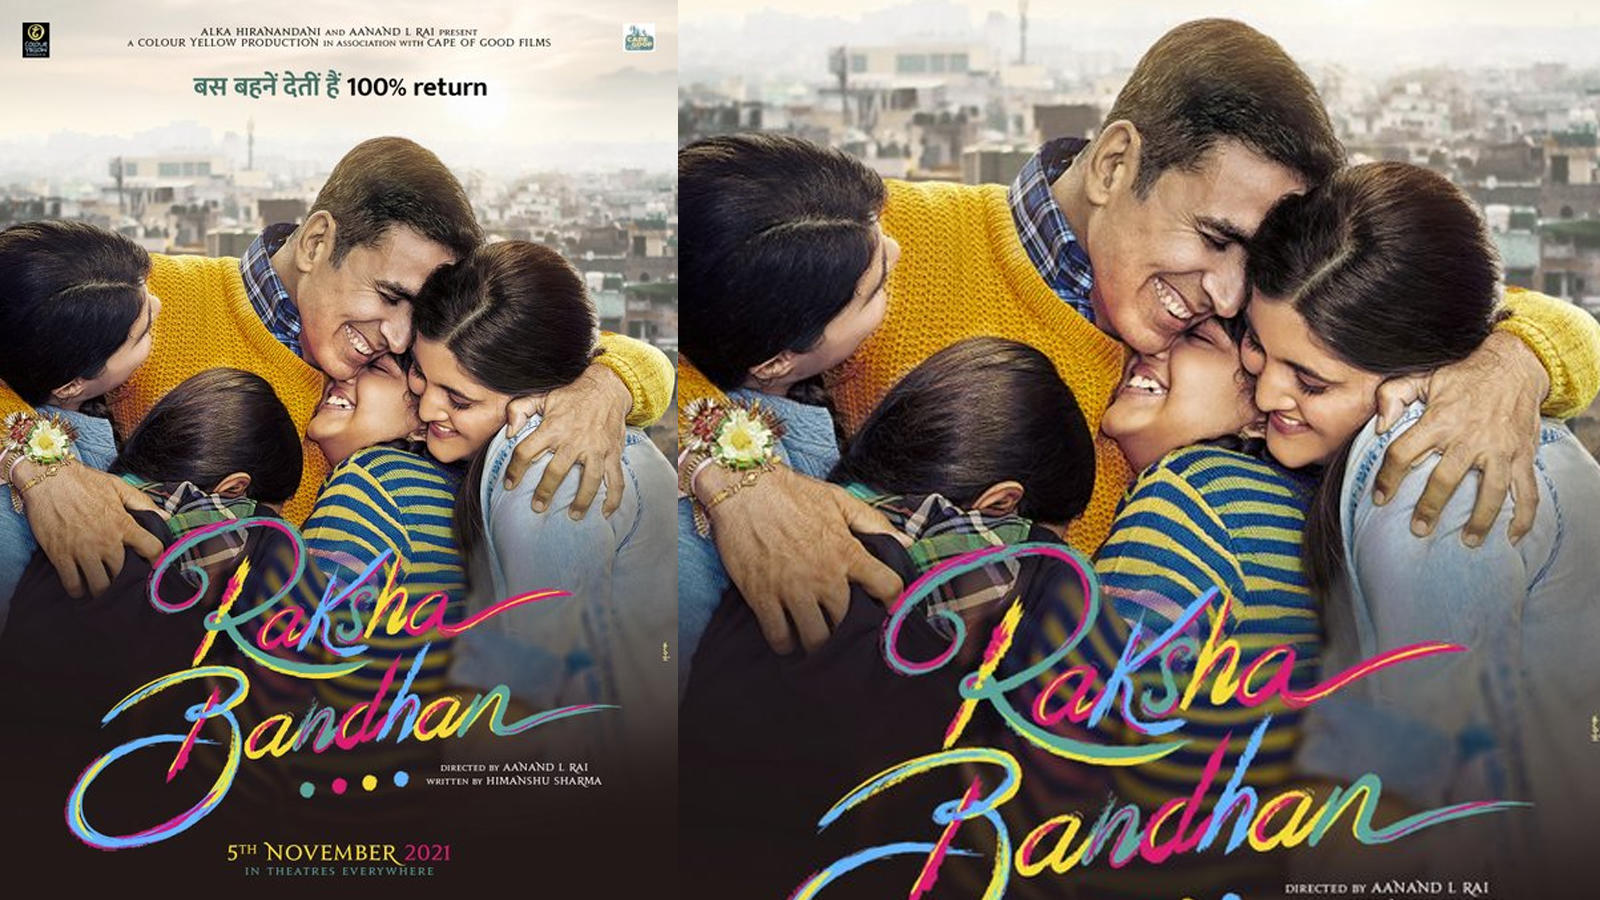 Raksha Bandhan के Boycott पर भड़के अक्षय, कहा- फिल्म नहीं देखना चाहते तो मत देखिए…